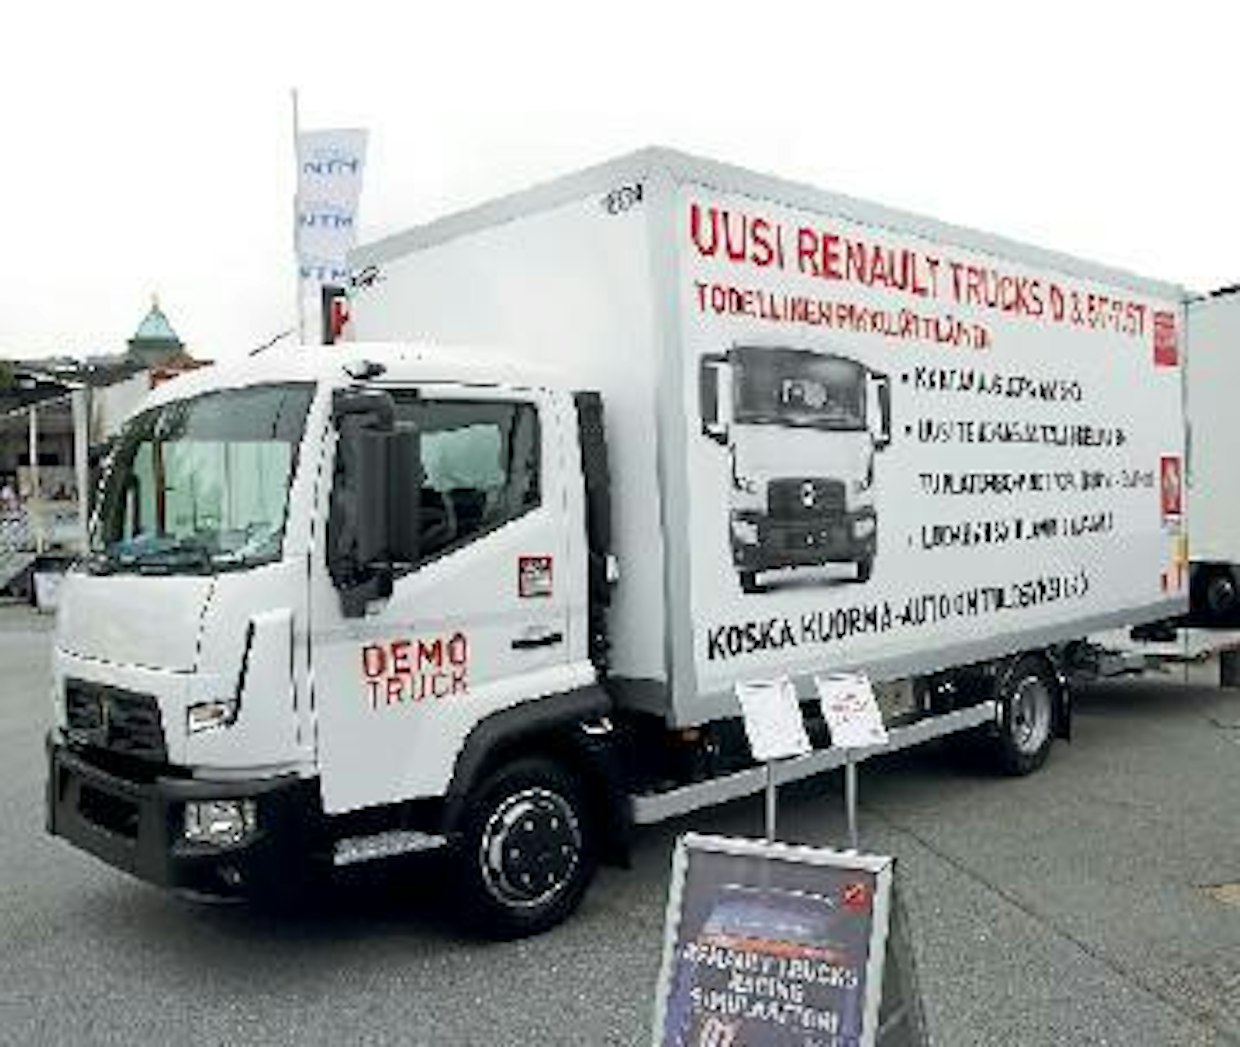 Renault Trucksin osastolla oli ensiesittelyssä D CAB 2 M -jakeluauto, josta löytyy versiot 3,7–7,5 tonnin painohaarukkaan. Kantavuutta on parhaimmillaan 4 625 kiloa. Uusi tuplaturbolla varustettu moottori tarjoaa 180 hv:n tehon ja 540 Nm väännön.